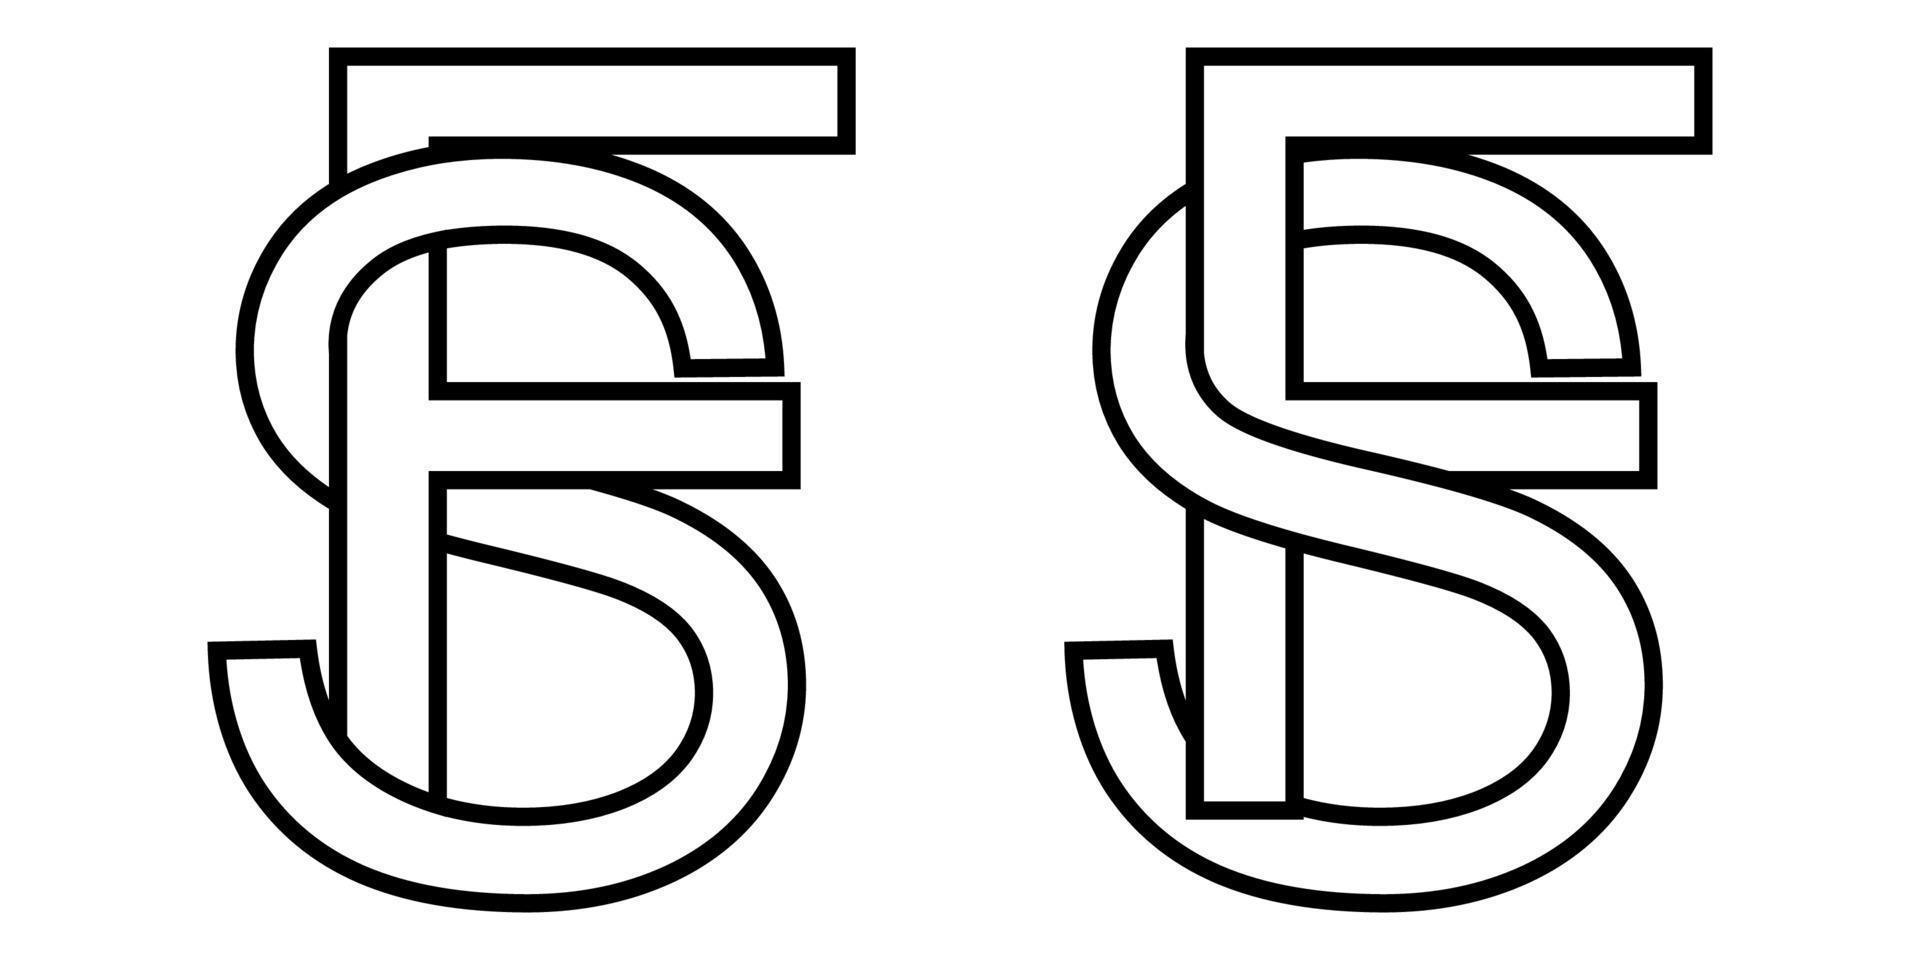 logo firmar fs y sf icono firmar entrelazado letras s, F vector logo sf, fs primero capital letras modelo alfabeto s F